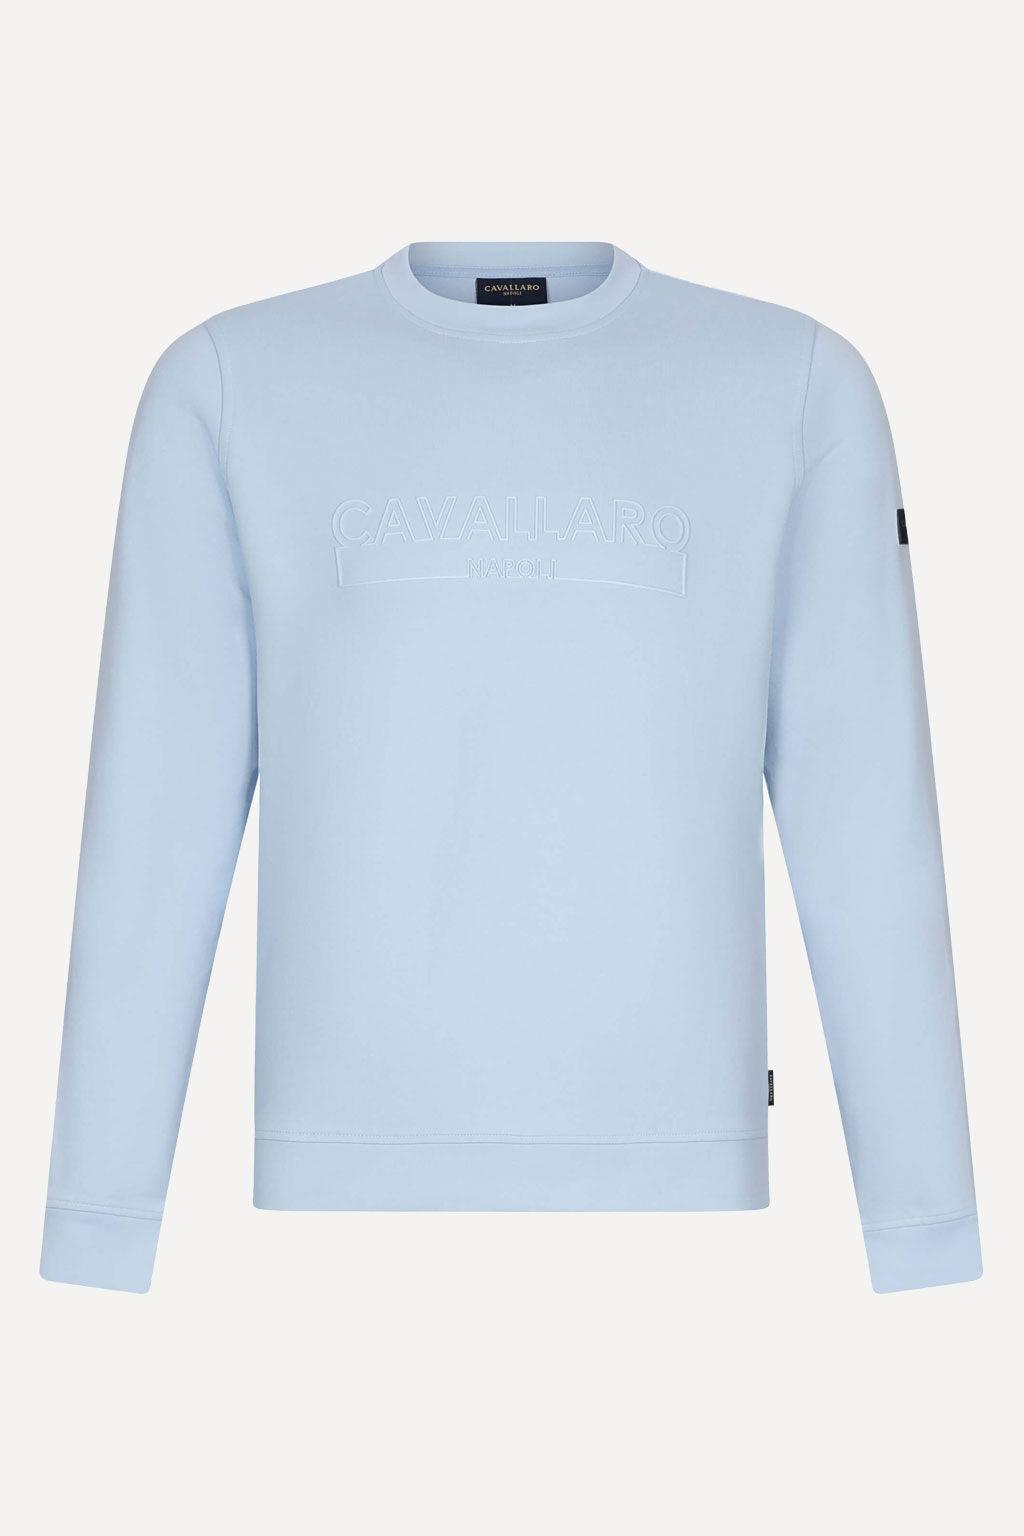 Cavallaro sweater - Big Boss | the menswear concept